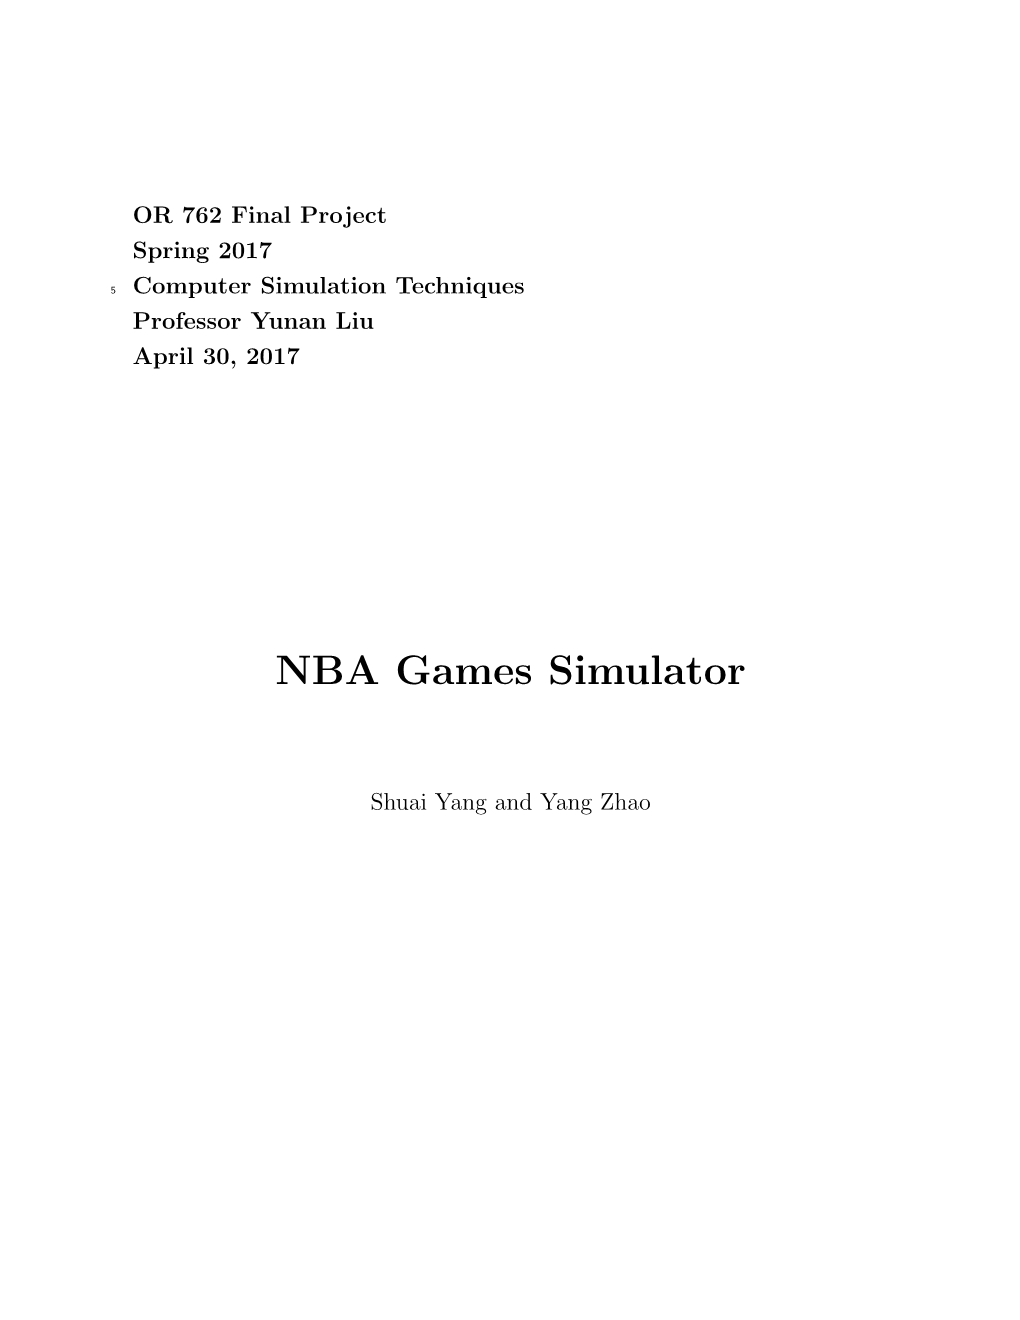 NBA Games Simulator